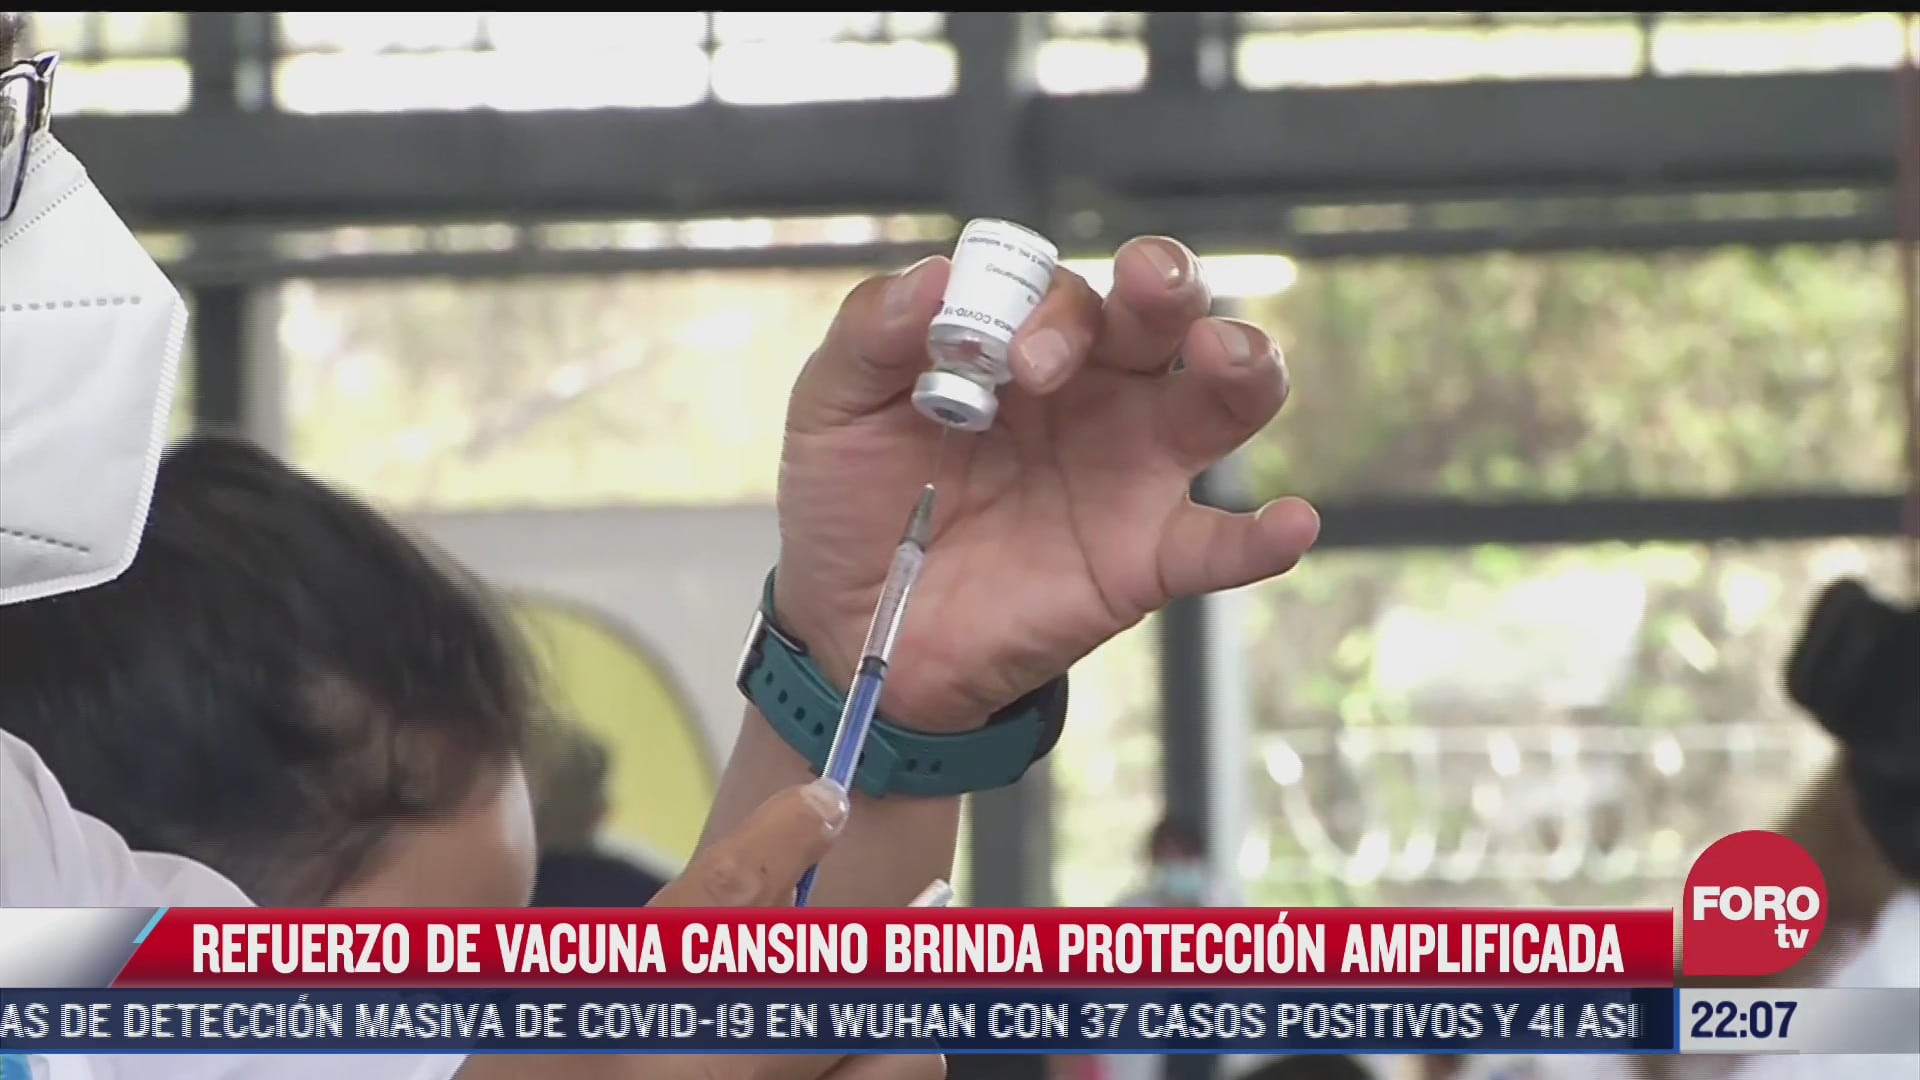 refuerzo de vacuna cansino brinda proteccion amplificada